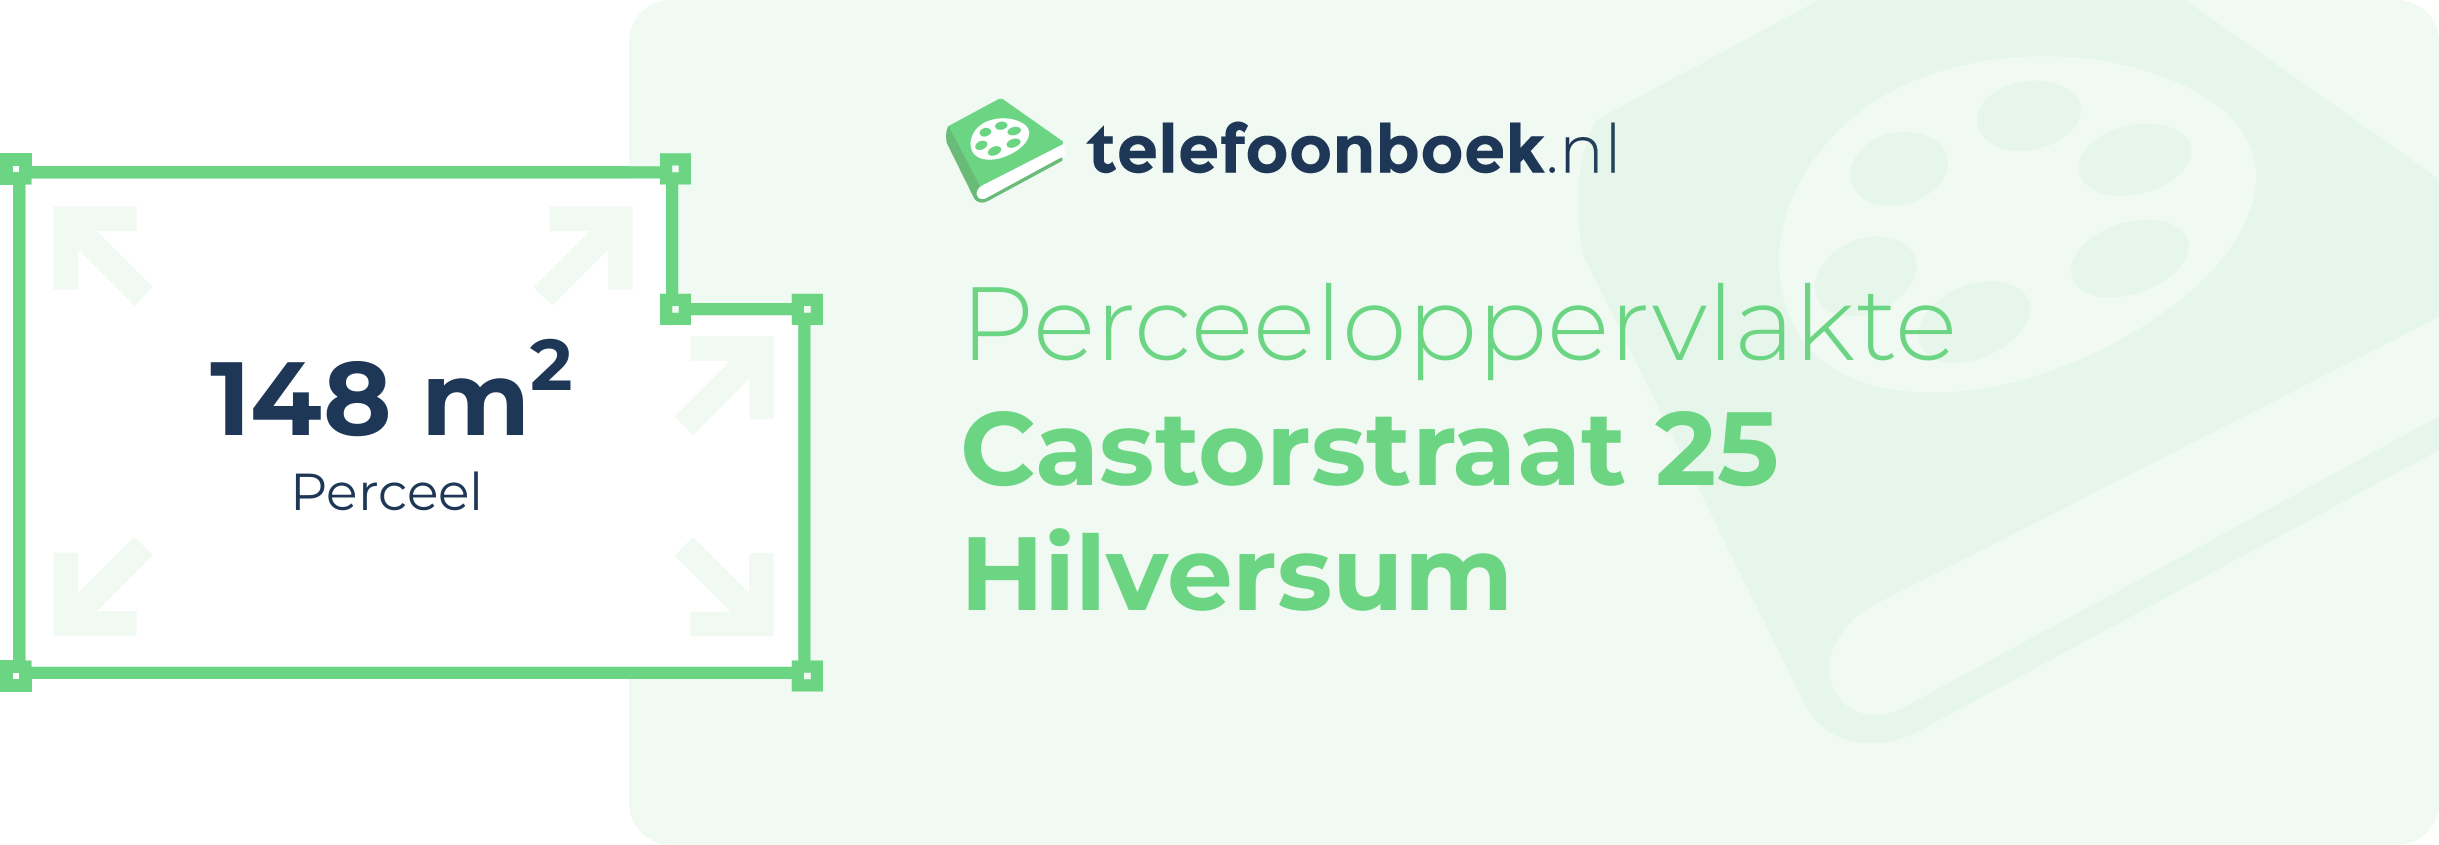 Perceeloppervlakte Castorstraat 25 Hilversum